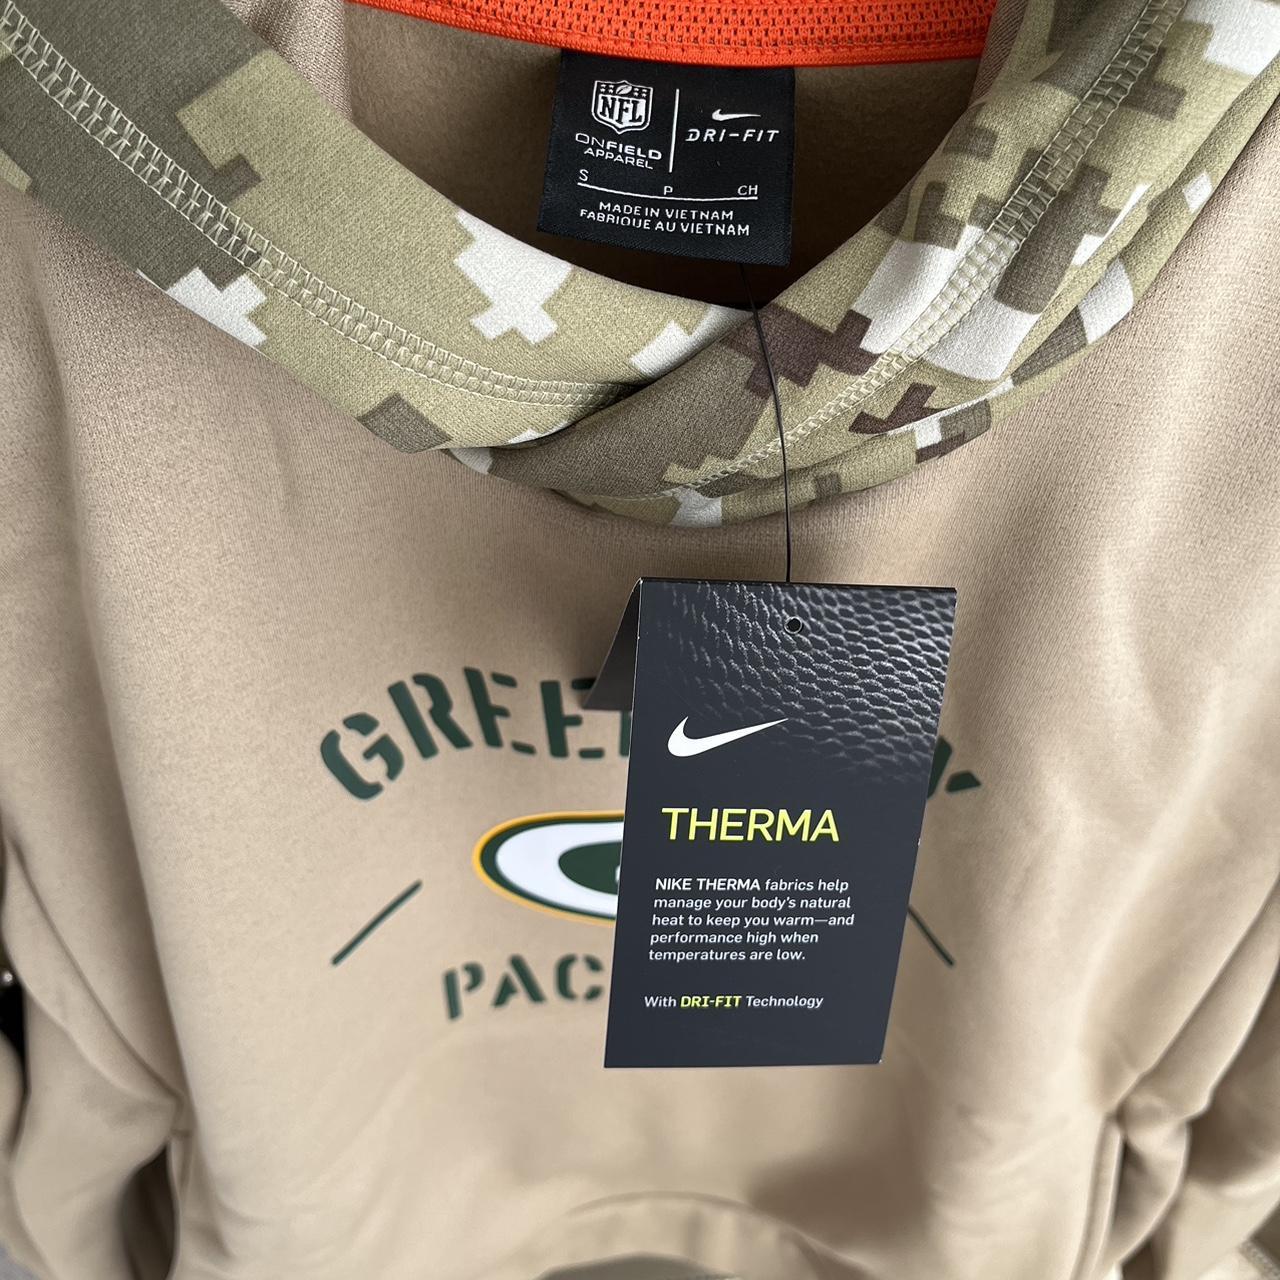 Nike Green Bay Packers NFL salute to service hoodie. - Depop